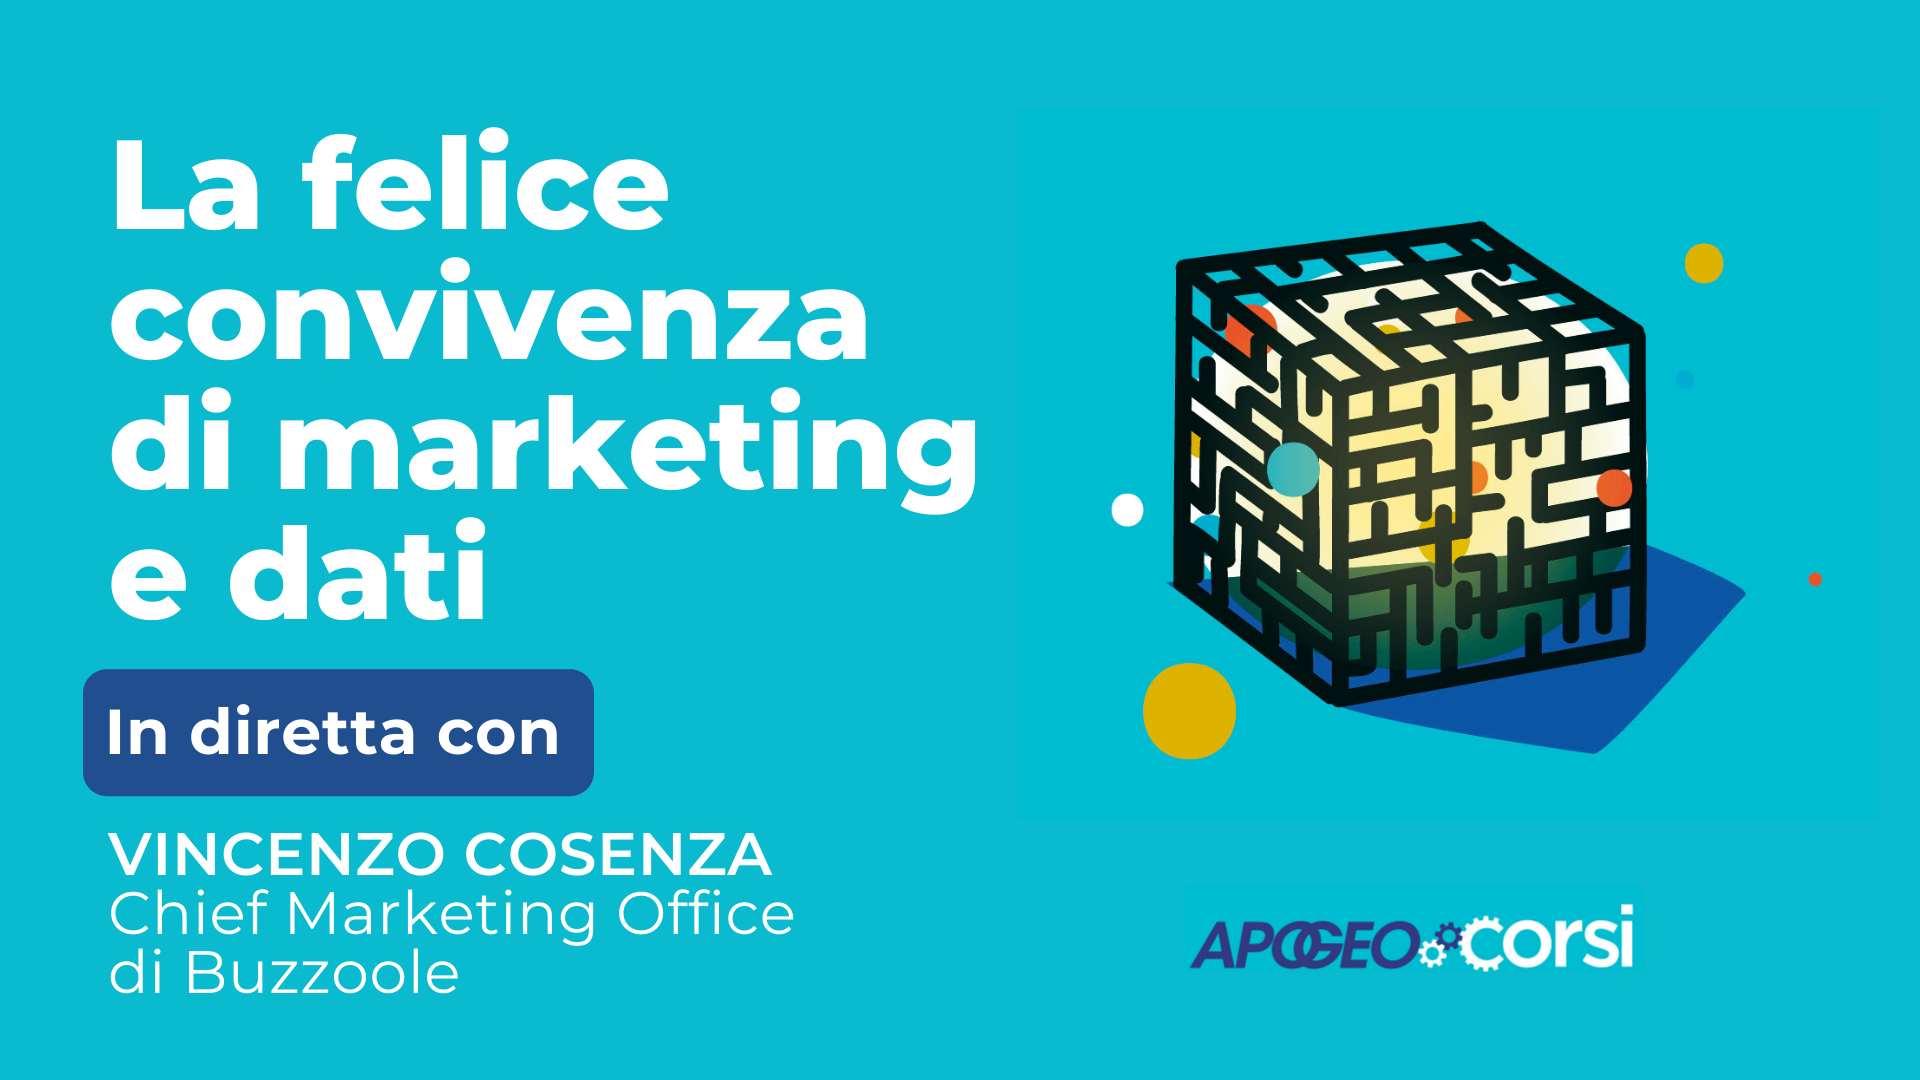 La felice convivenza di marketing e dati, con Vincenzo Cosenza